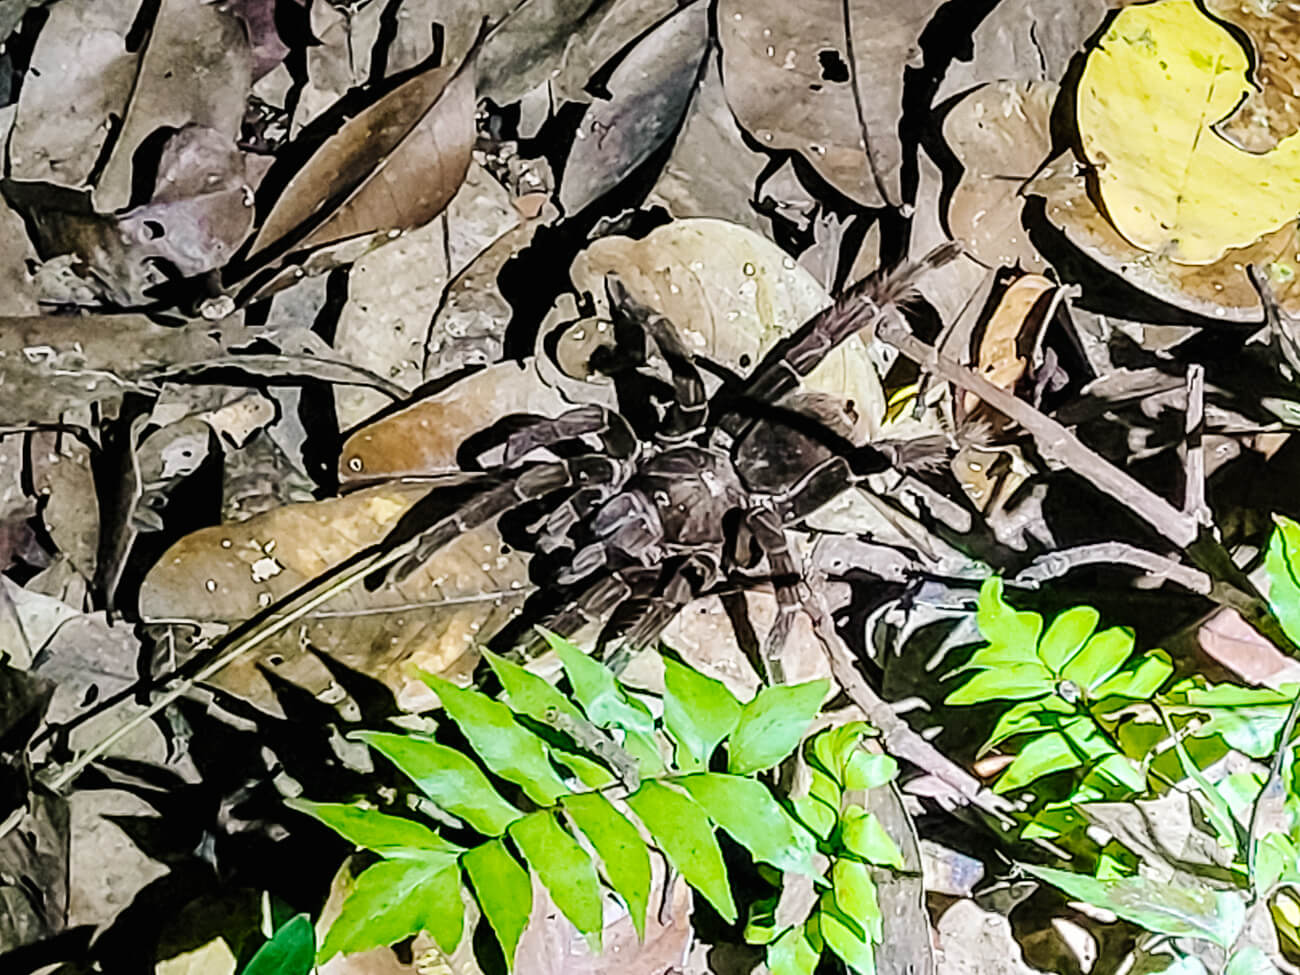 Tarantula in Amazone van Peru.